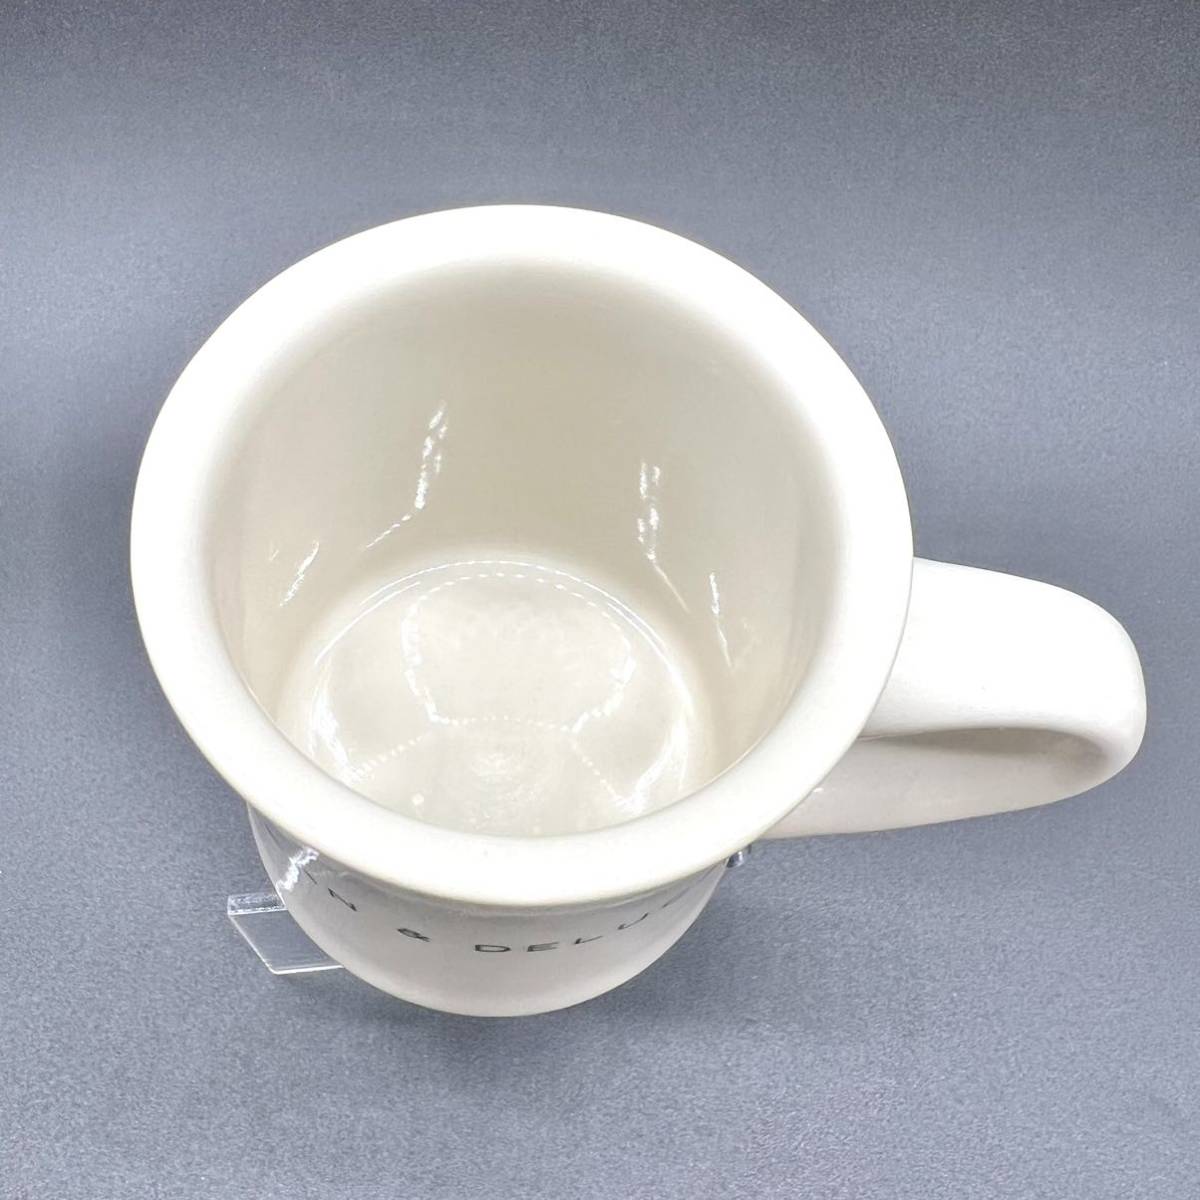 DEAN & DELUCA ディーアンドデルーカ マグカップ 陶器 食器 コーヒー マグ カフェ 人気 ブランドホワイト 珈琲 コップ カップ_画像3